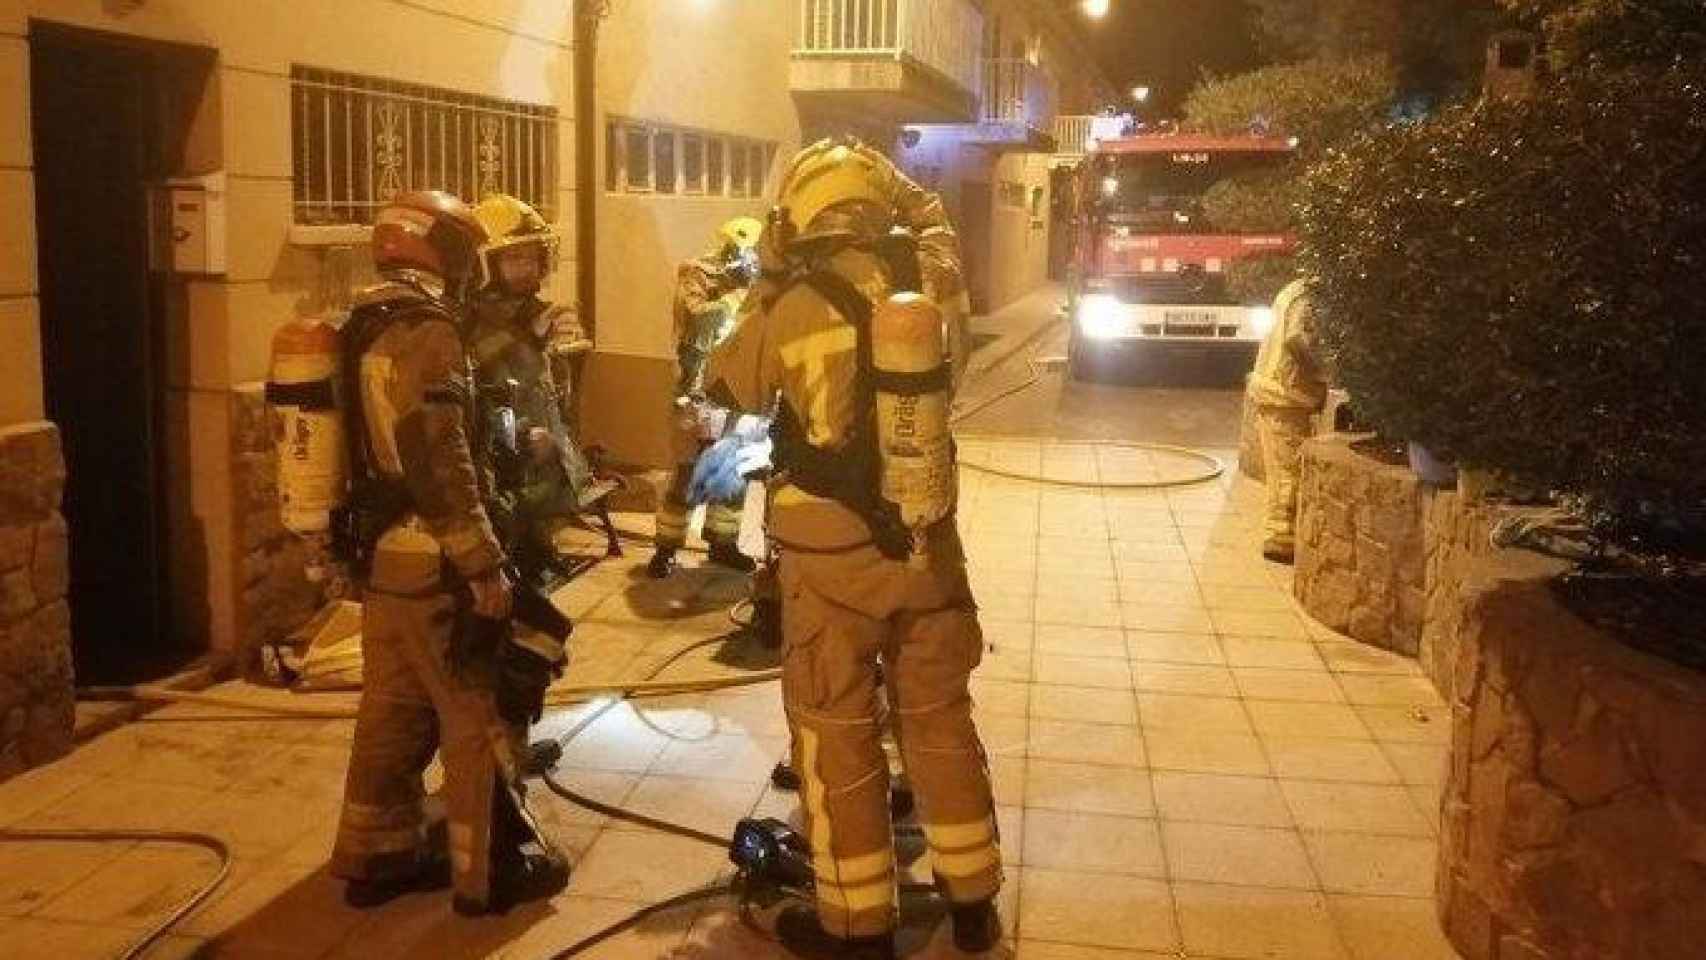 Efectivos de bomberos tras sofocar las llamas y rescatar a las dos personas intoxicadas en el incendio de esta noche en Cardona (Barcelona) / BOMBERS